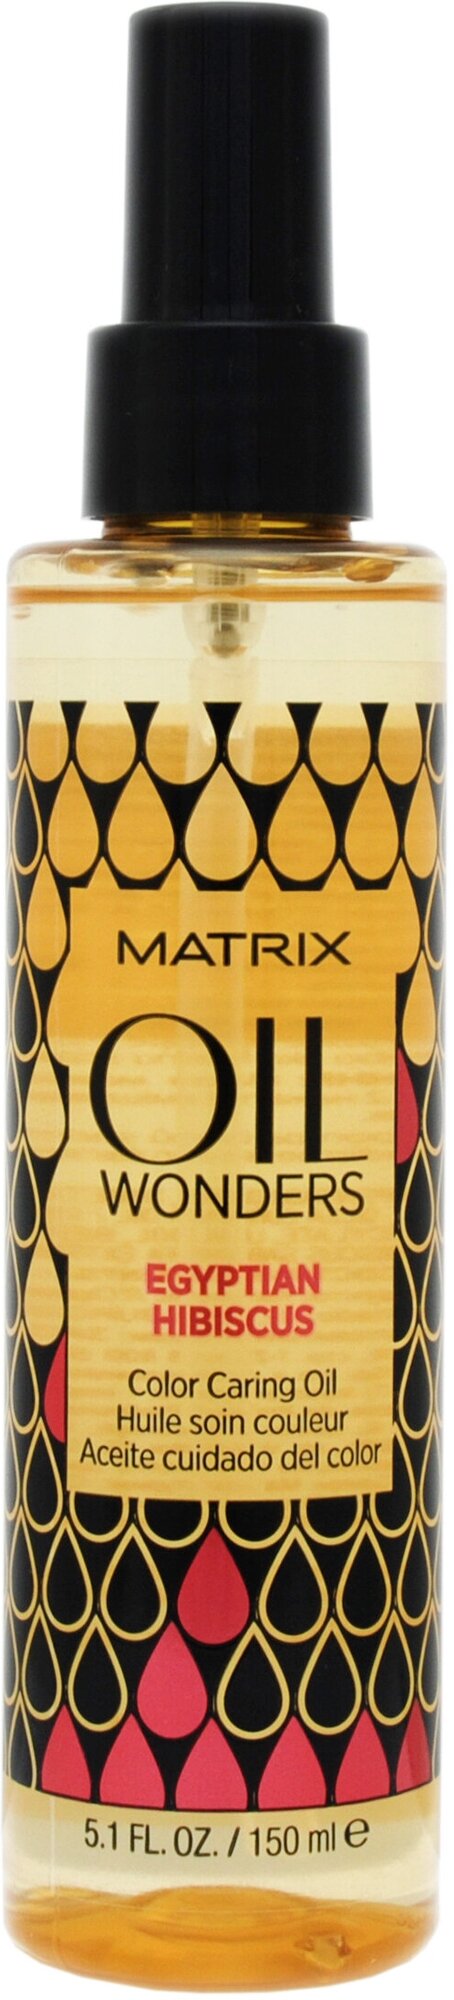 Matrix Oil Wonders Масло для защиты цвета окрашенных волос Египетский Гибискус, 150 г, 150 мл, спрей